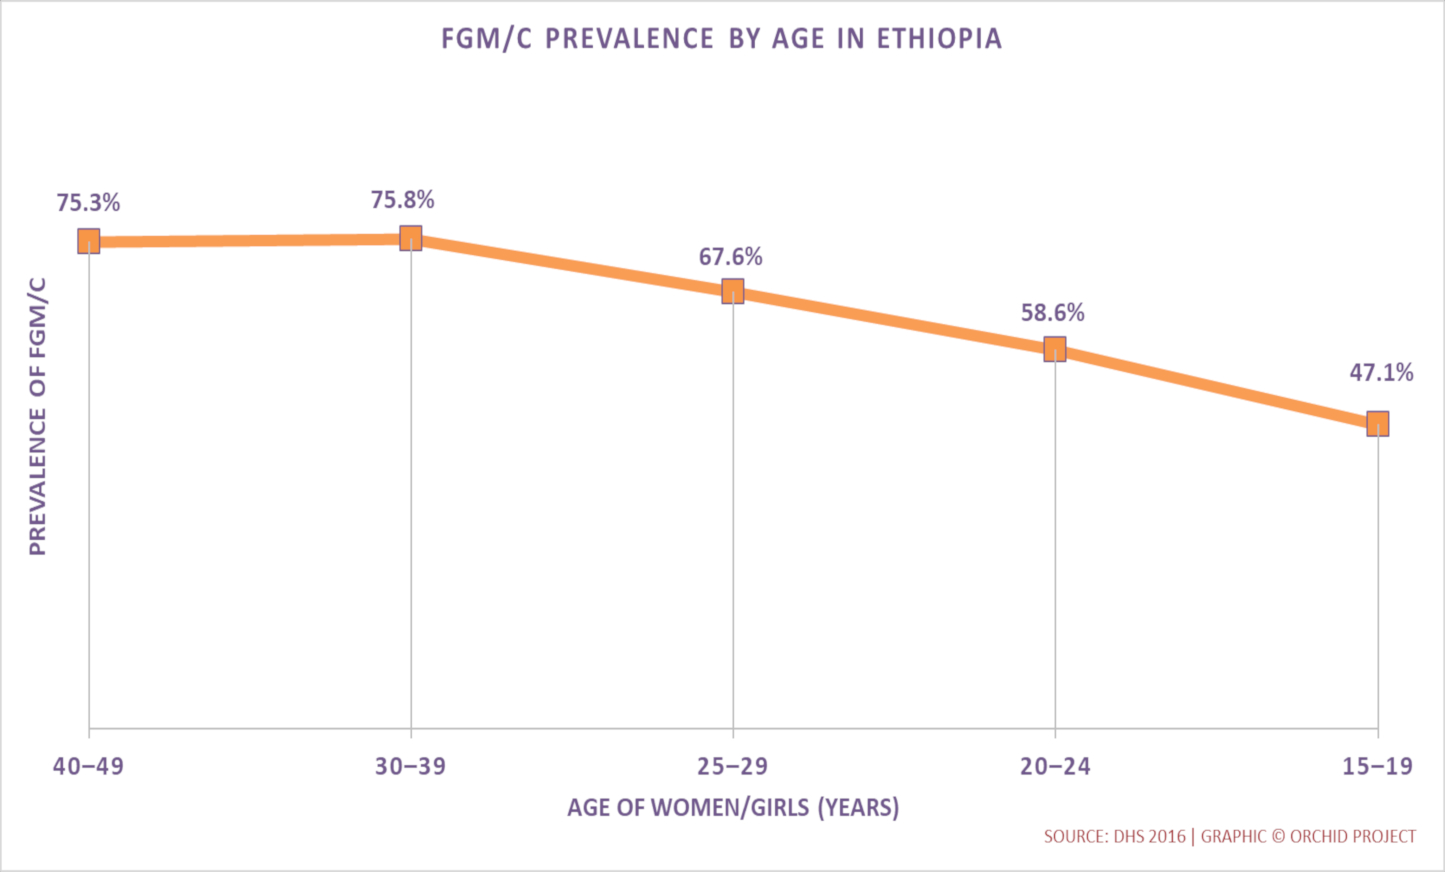 Trends in FGM/C Prevalence in Ethiopia